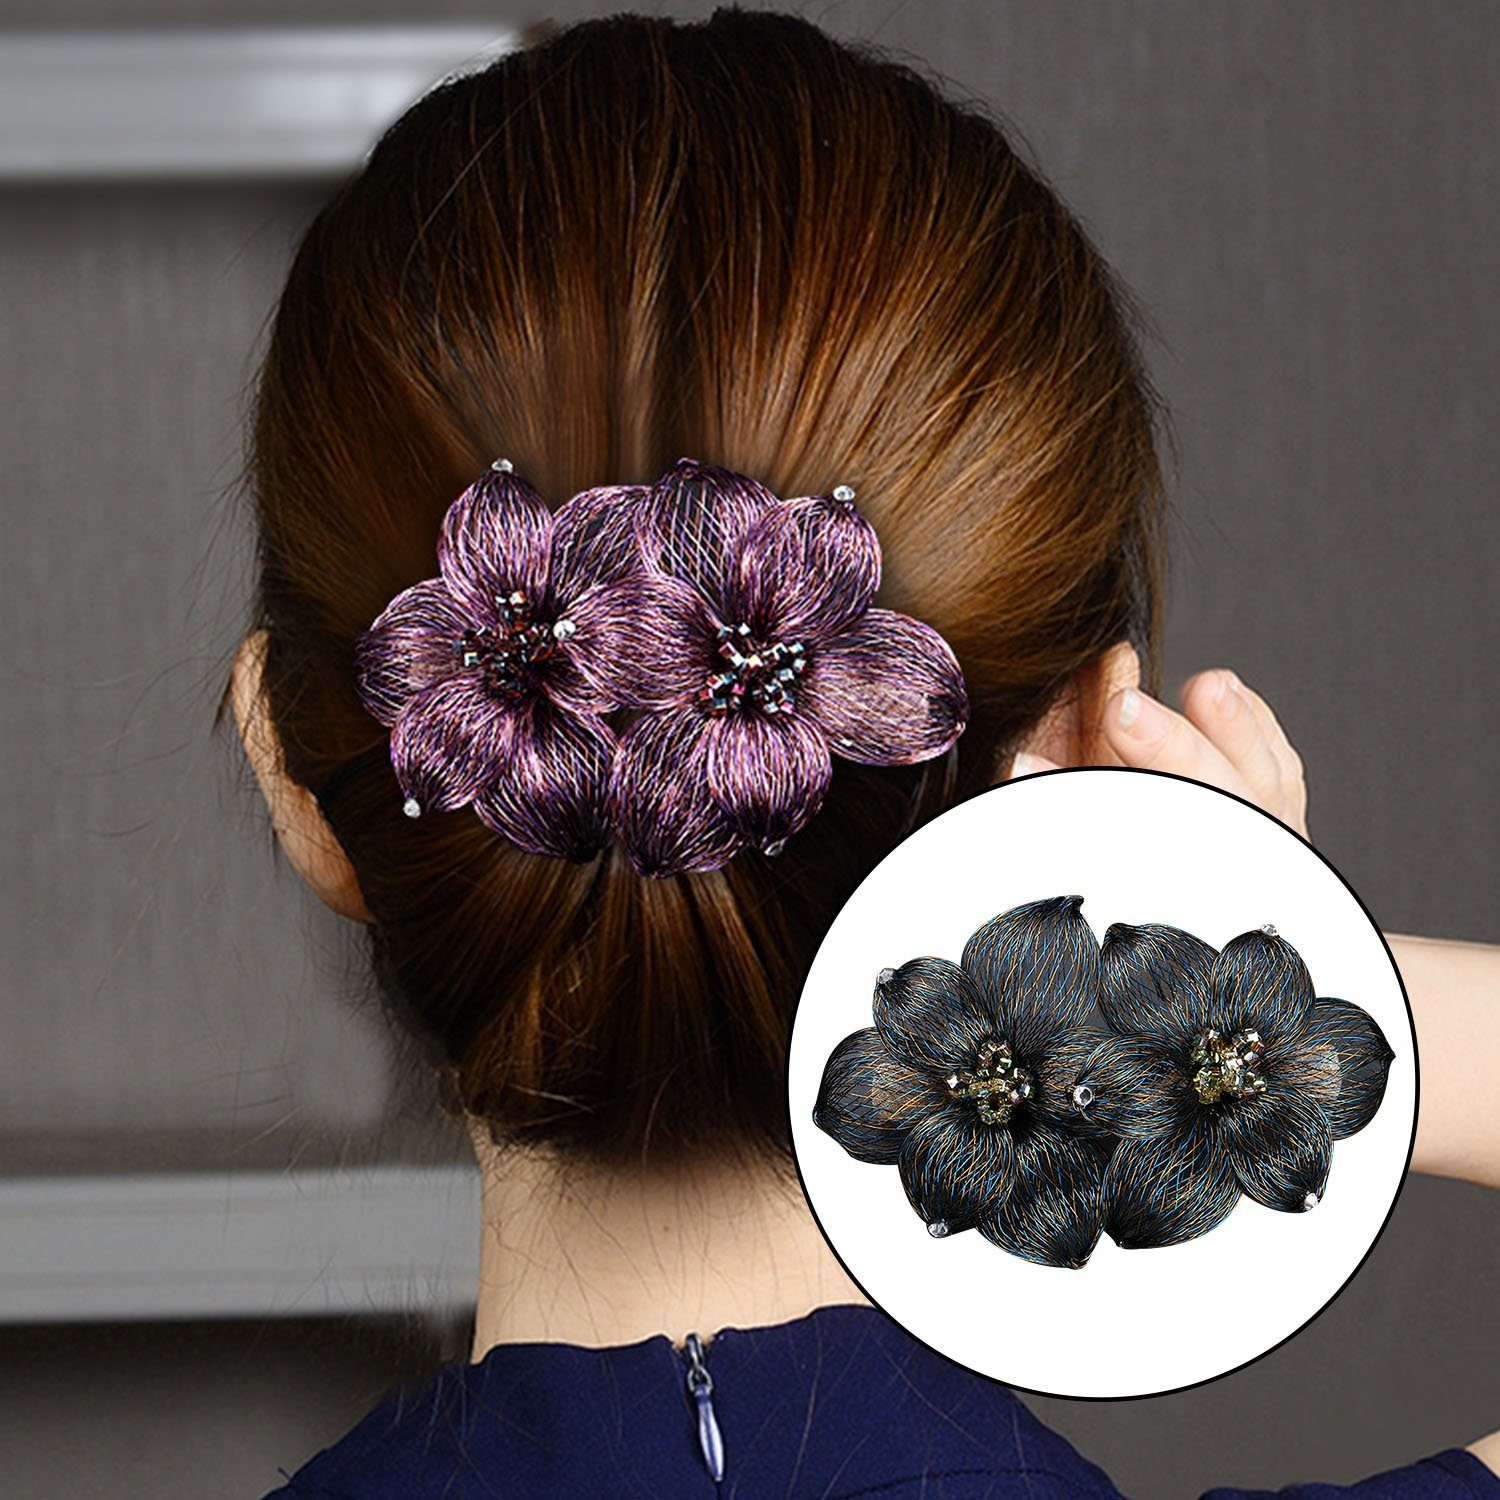 MAGICSHE Haarspange 1 Stück Elegante Haarspangen für Damen Mädchen Blau | Haarspangen